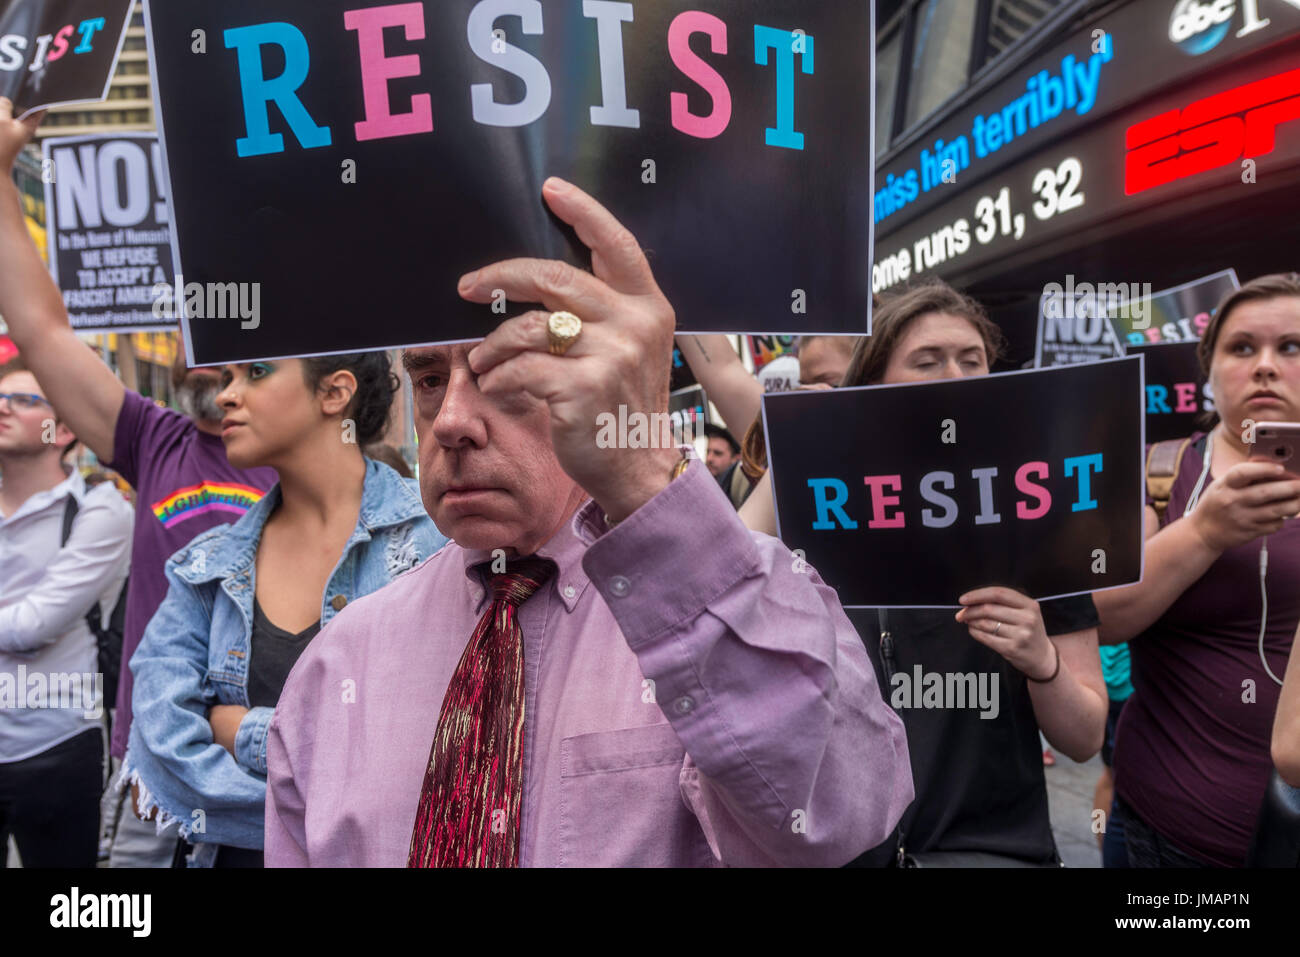 New York, NY 26 luglio 2017 in risposta al presidente Donald Trump's tweet per vietare transgender gente dai militari, avvocati, attivisti e alleati fatta convergere sul reclutamento militare nel centro di Times Square in segno di protesta. ©Stacy Rosenstock Walsh/Alamy Live News Foto Stock